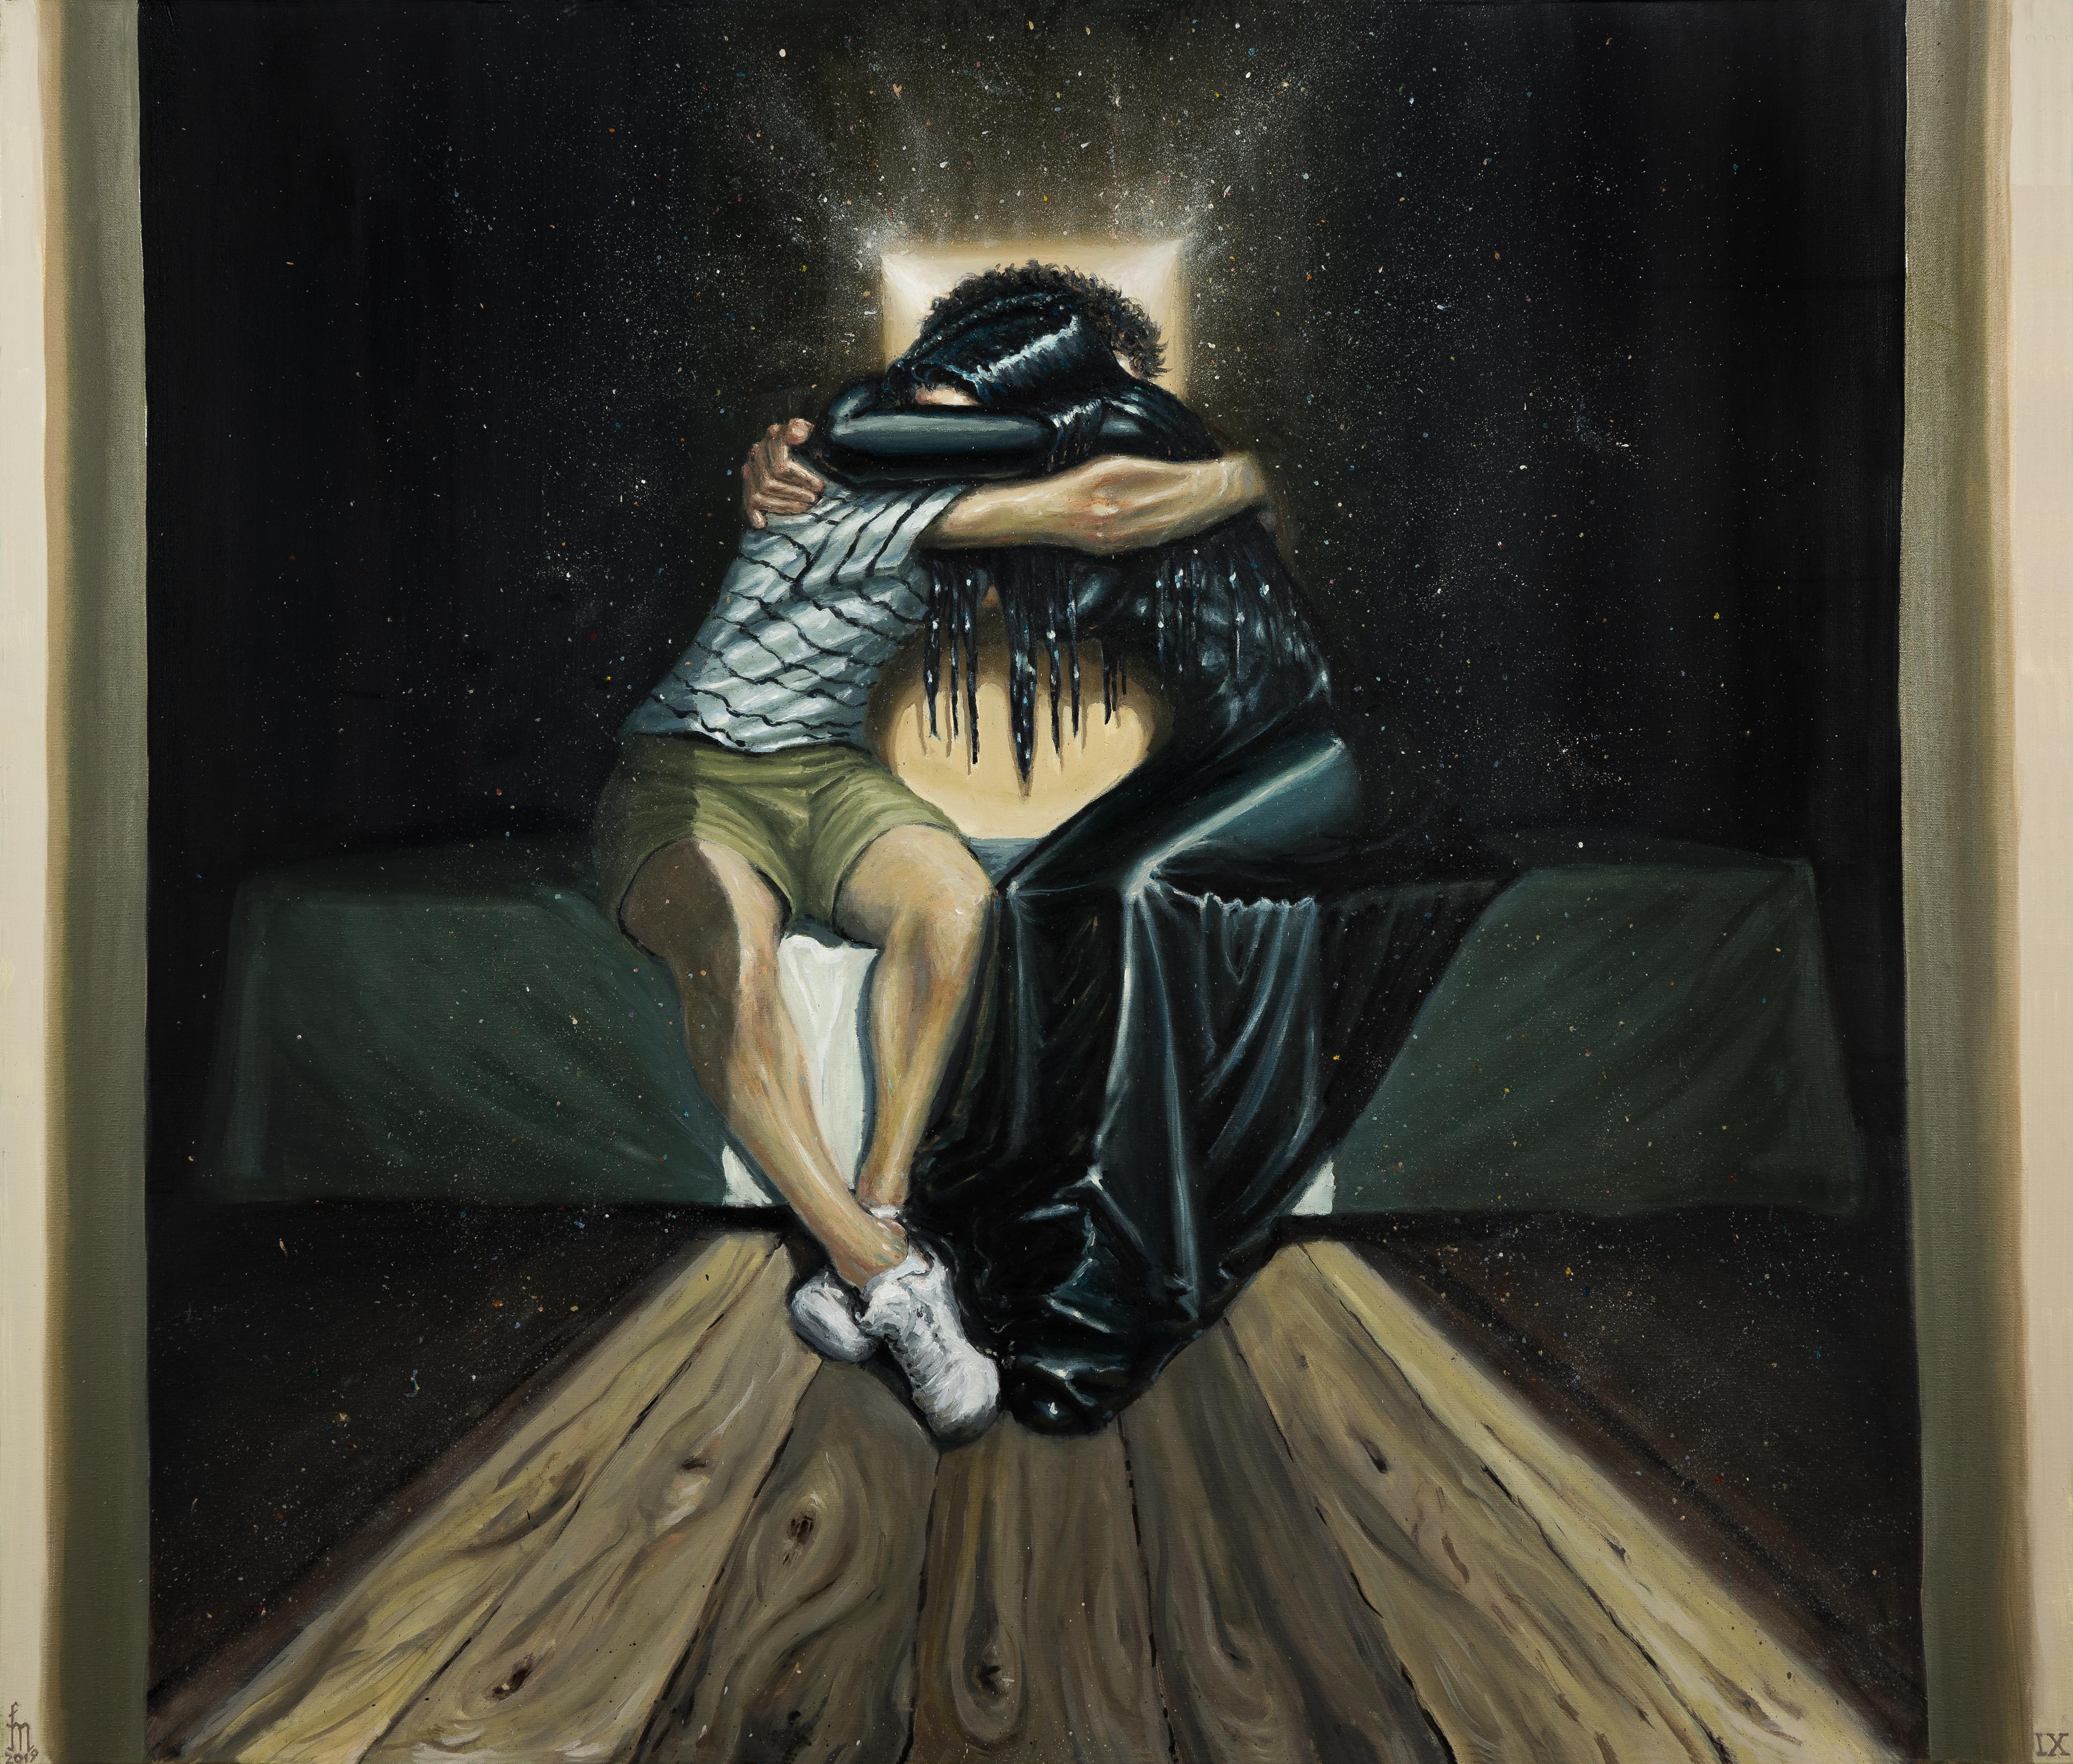 Mihai Florea Interior Painting - The Emotional Reunion - Contemporary, Dream, Blue, Black, Hug, Affection